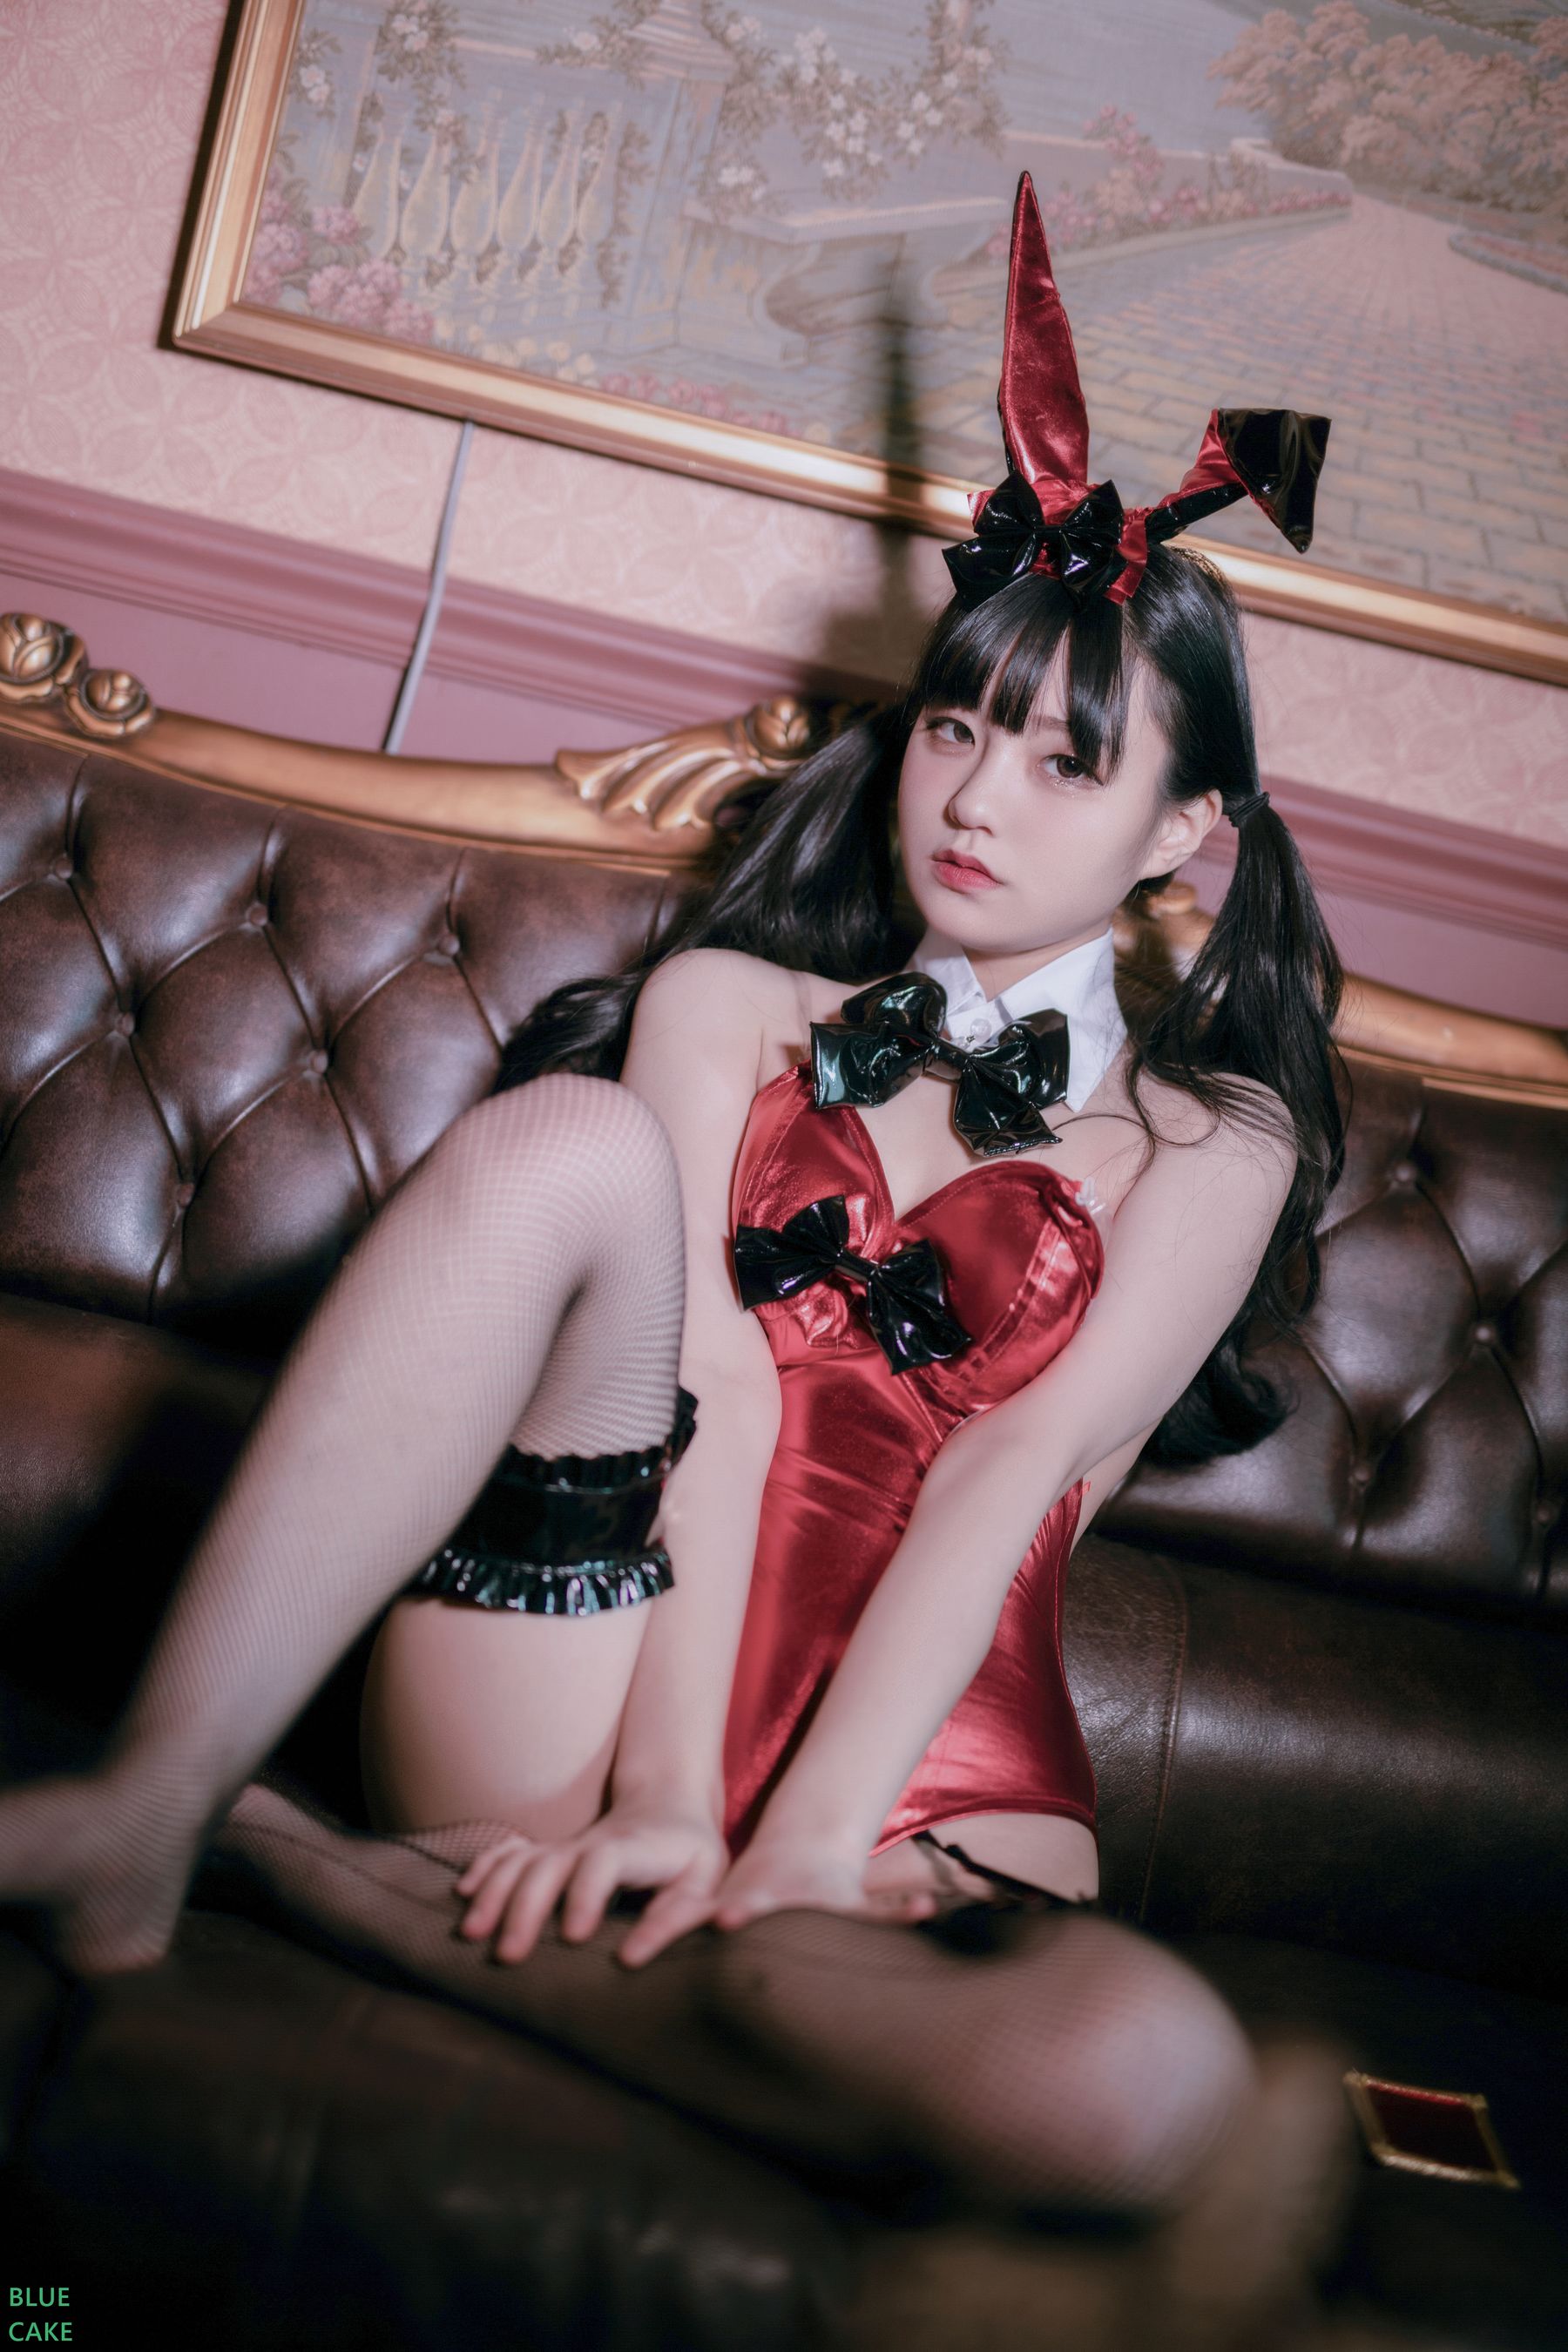 [BLUECAKE]  Jenny - Kurumi Bunny/(142P)